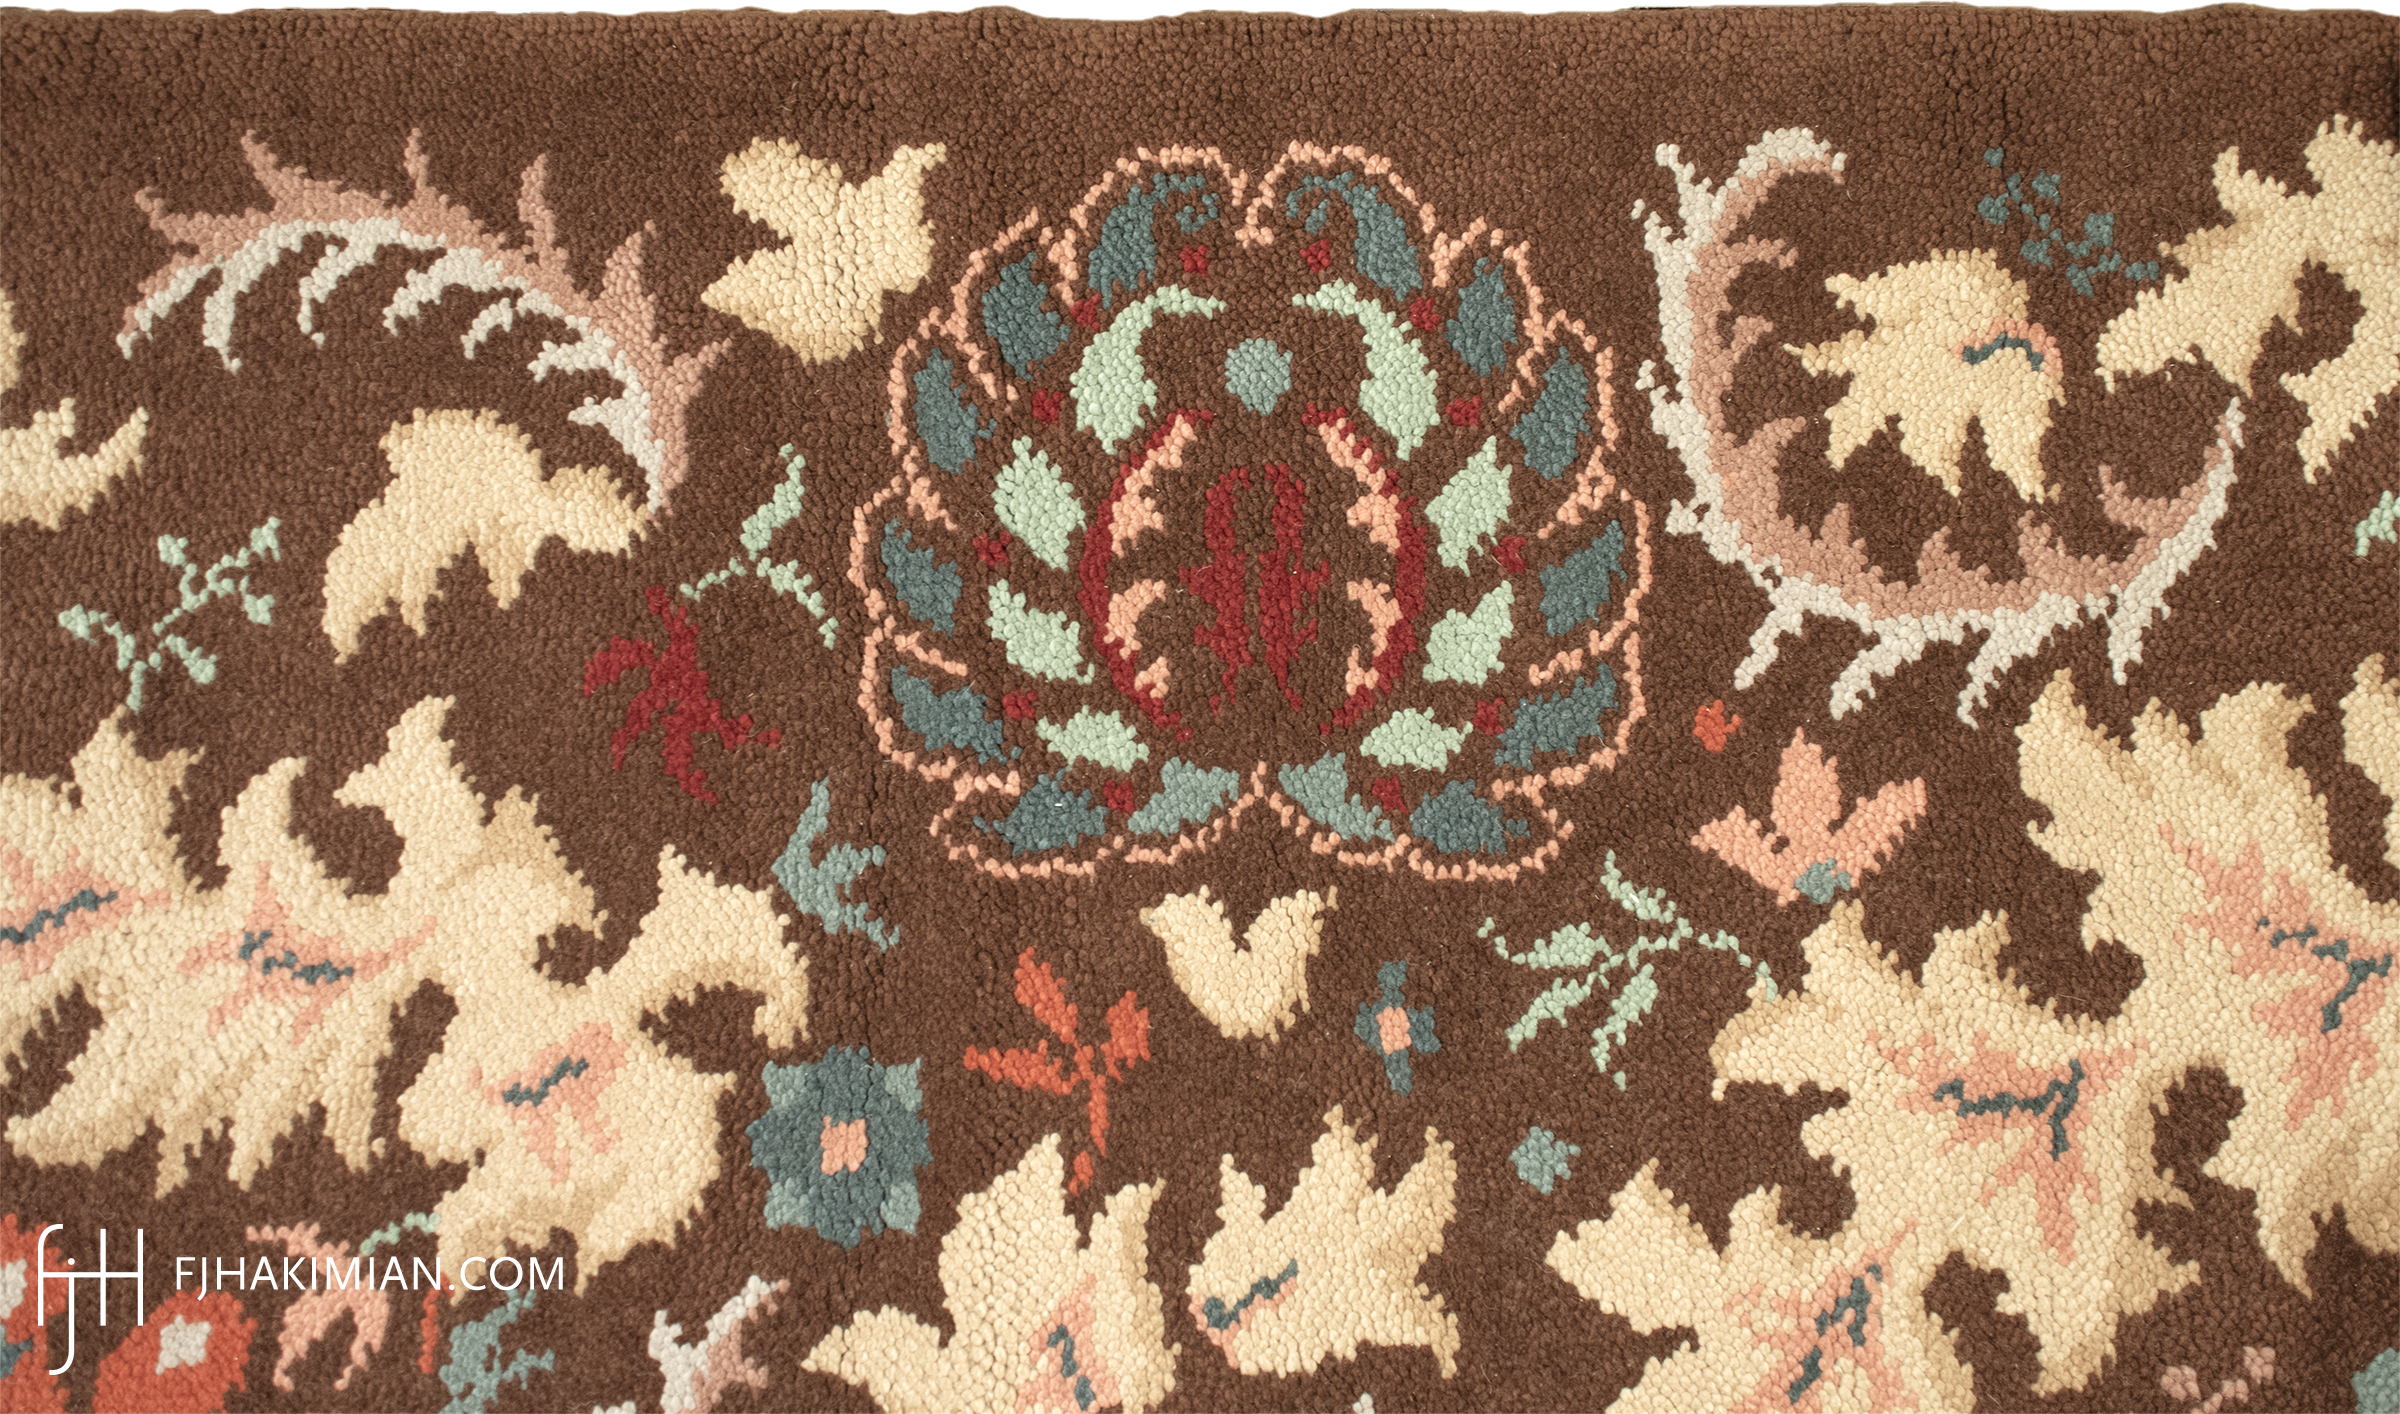 FJ Hakimian | 02108 | Vintage Carpets